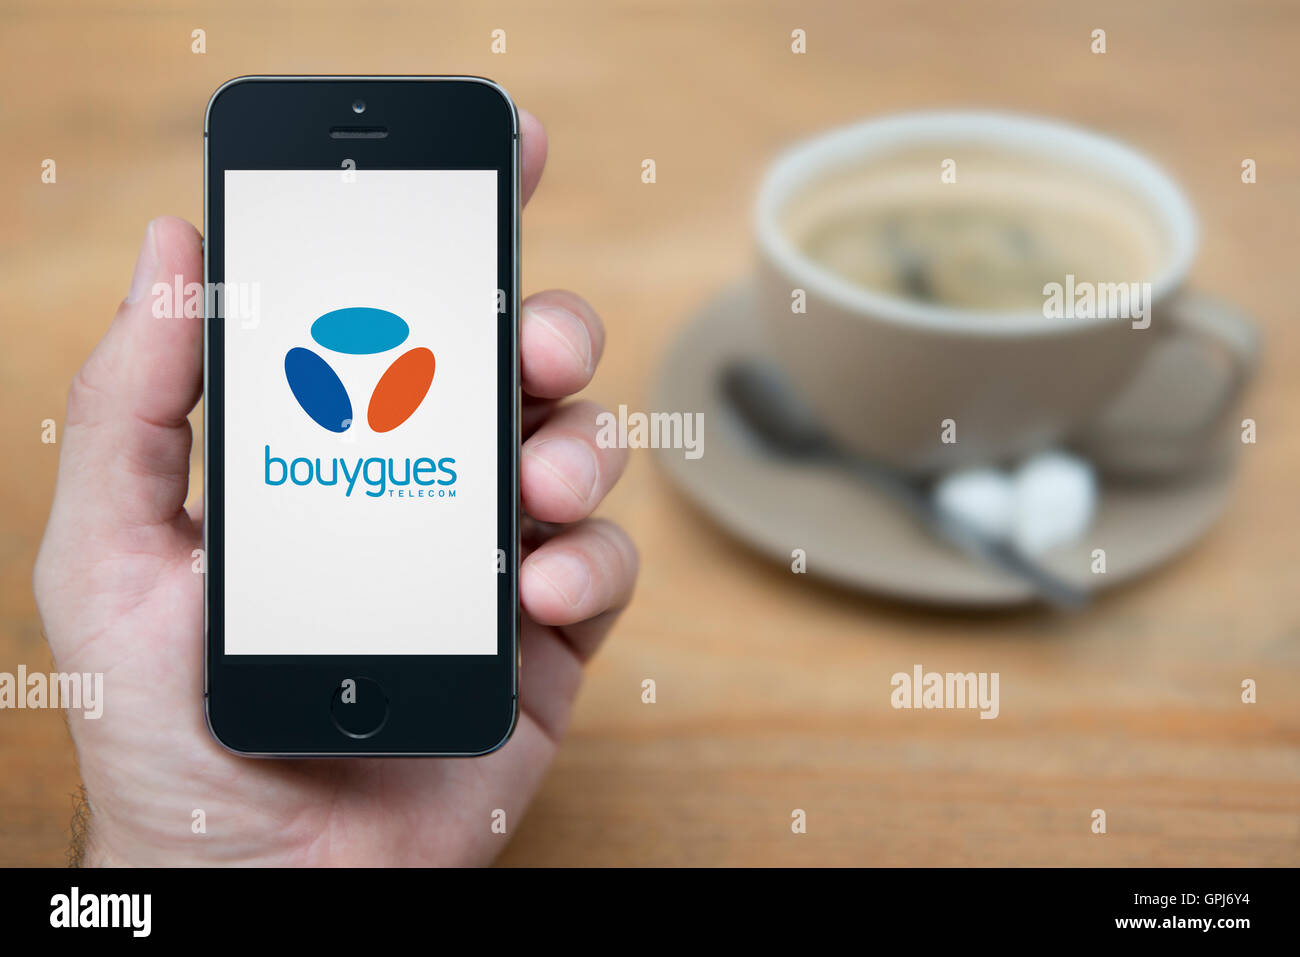 Un hombre mira su iPhone que muestra el logotipo del operador de telecomunicaciones Bouygues Telecom, con café (uso Editorial solamente). Foto de stock